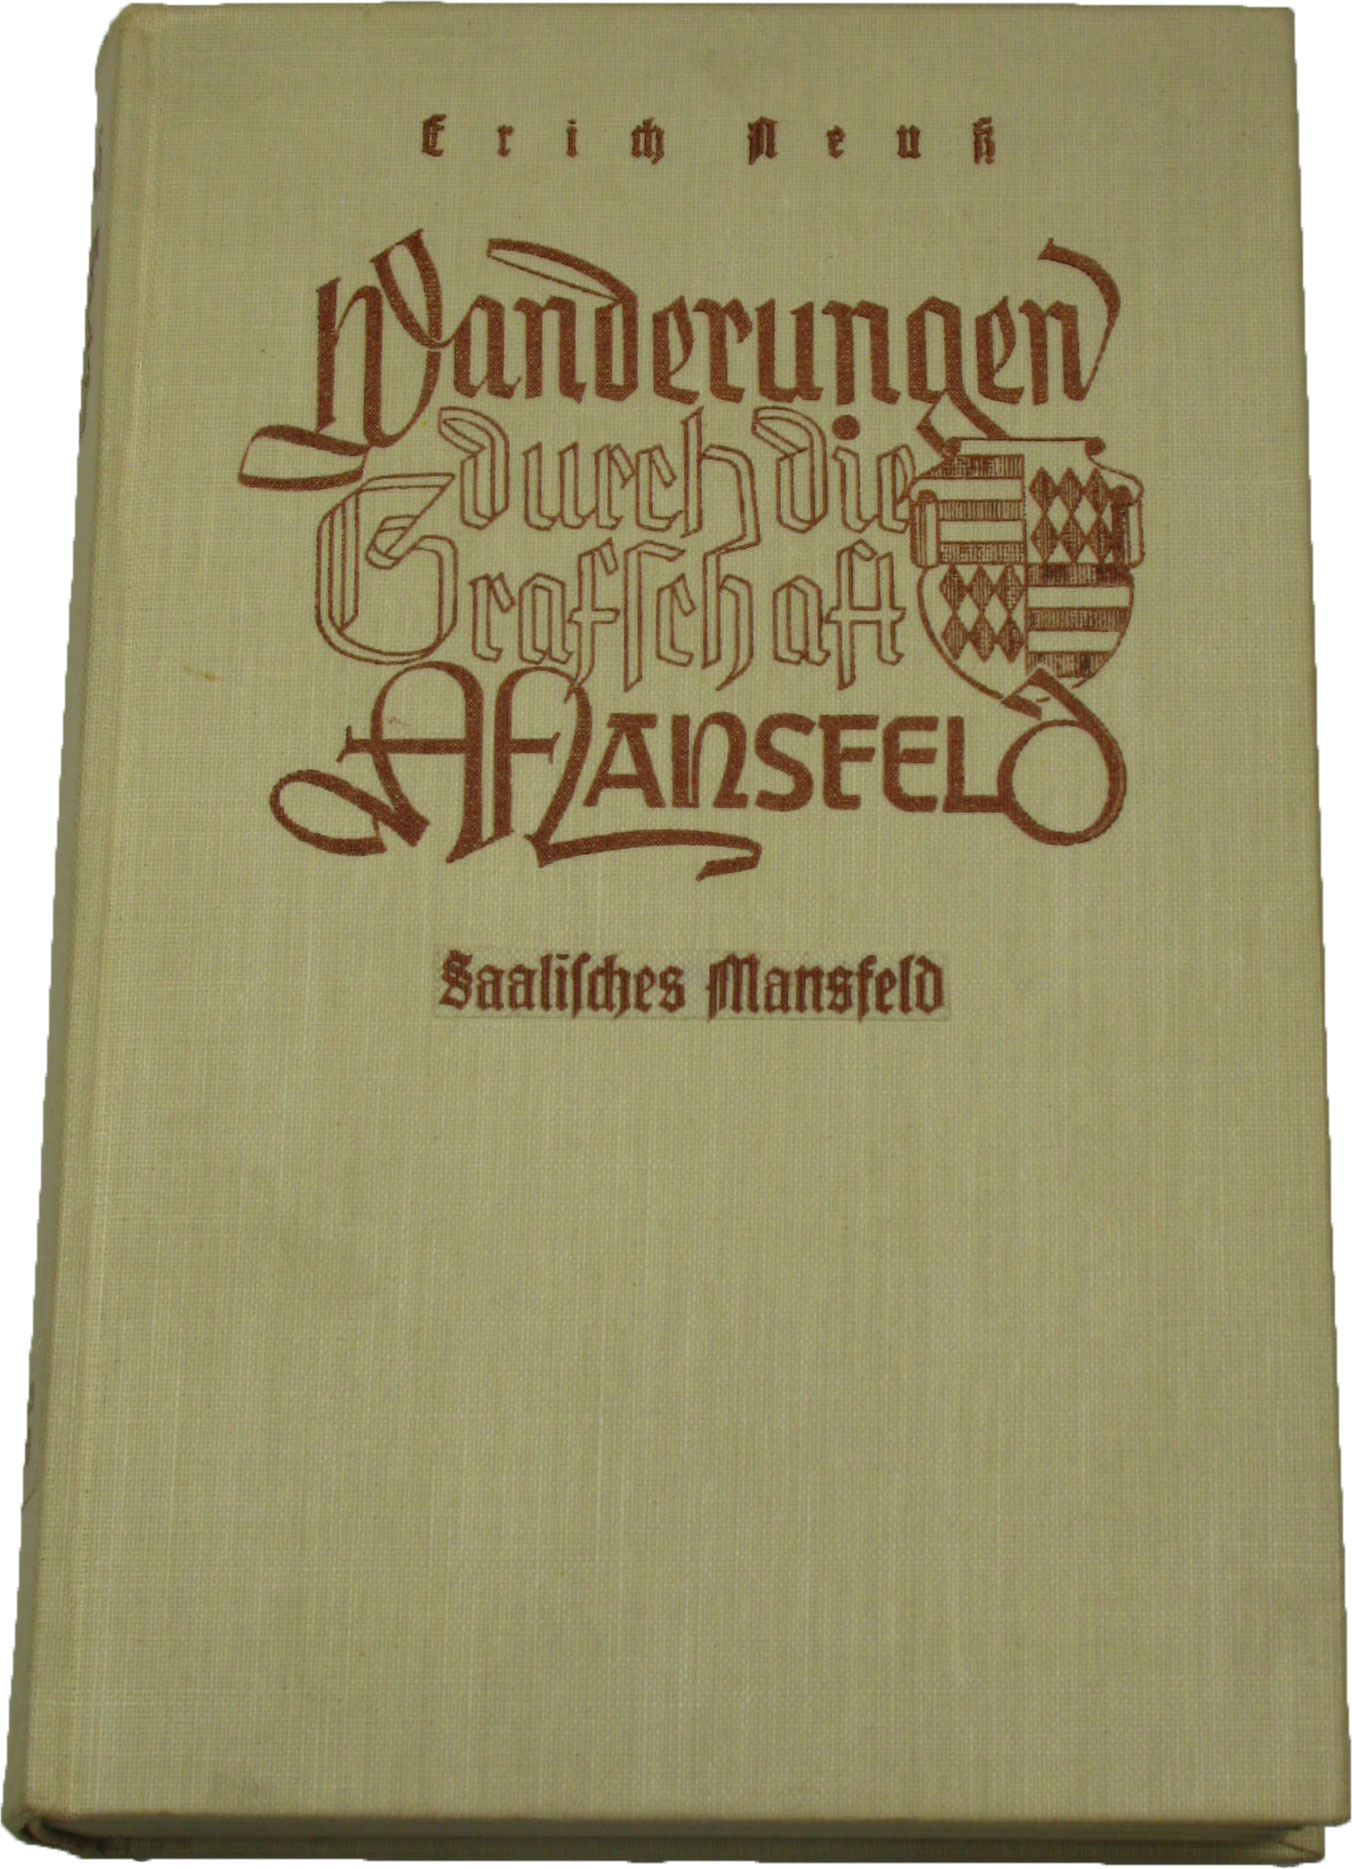 Neuss, Erich:  Wanderungen durch die Grafschaft Mansfeld. Saalisches Mansfeld. 